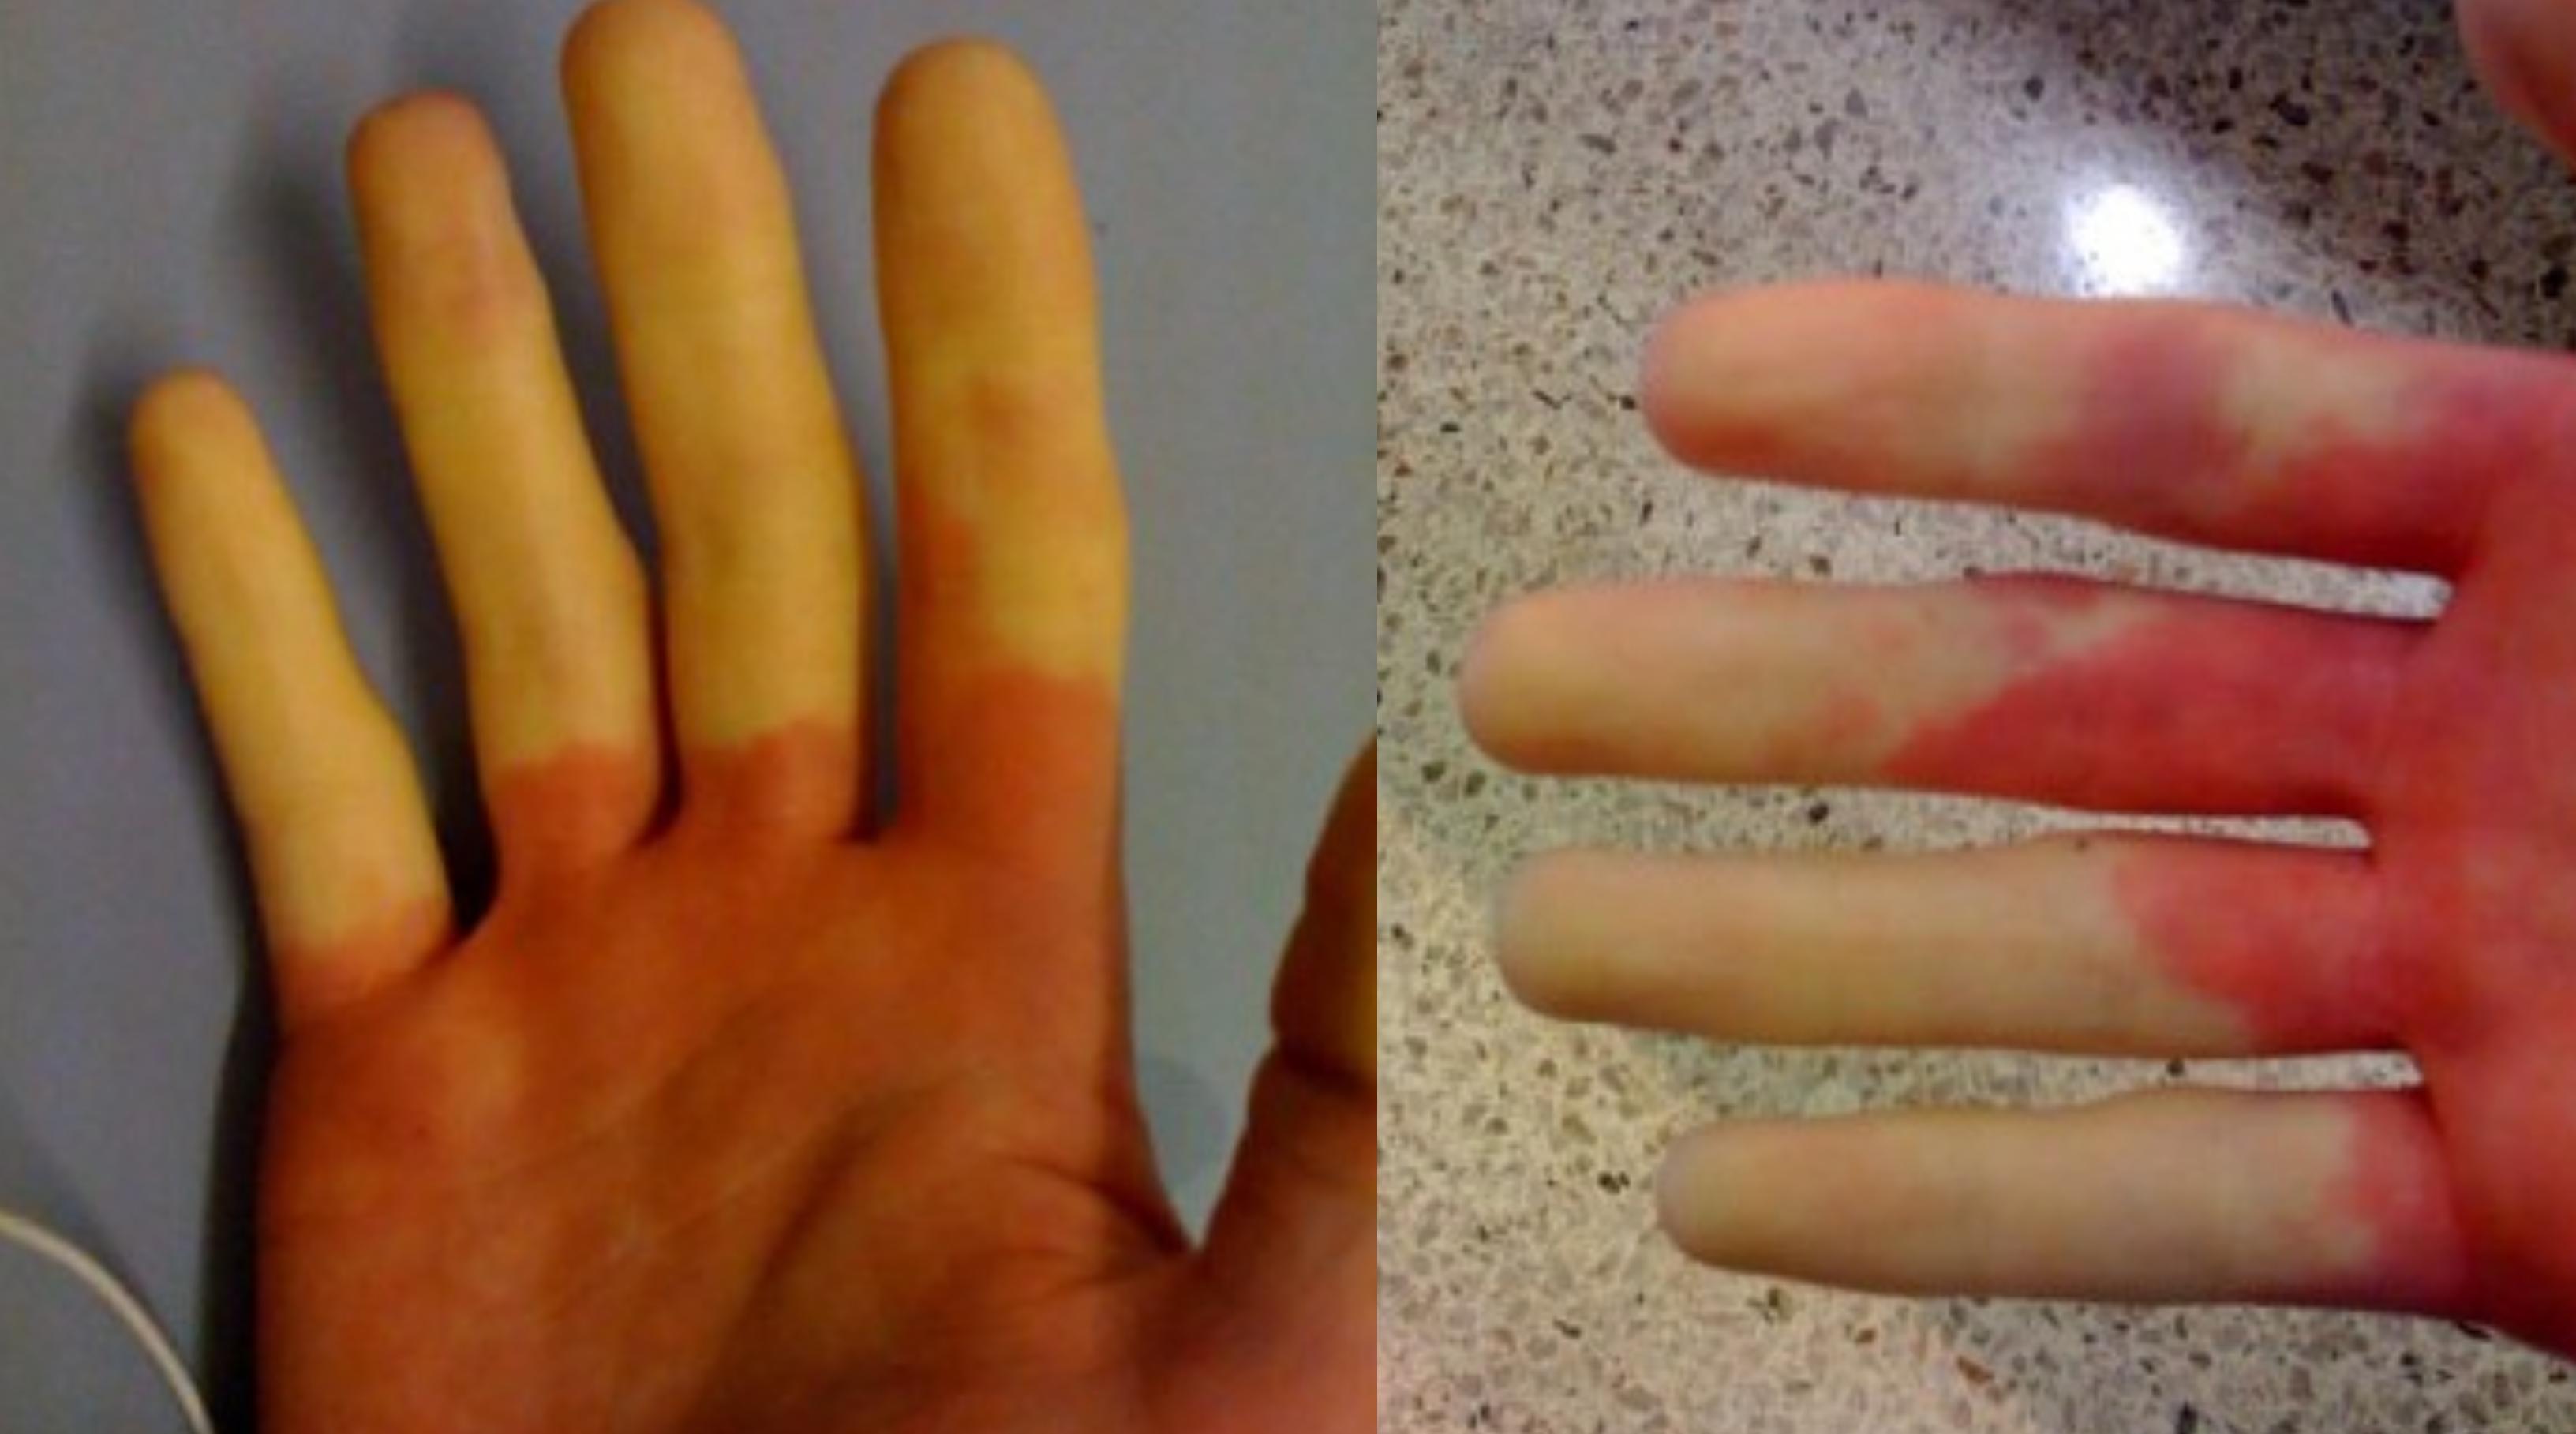 O femeie și-a pozat degetele colorate diferit: așa arăta în dimineața asta. Ce a pățit și ce înseamnă de fapt